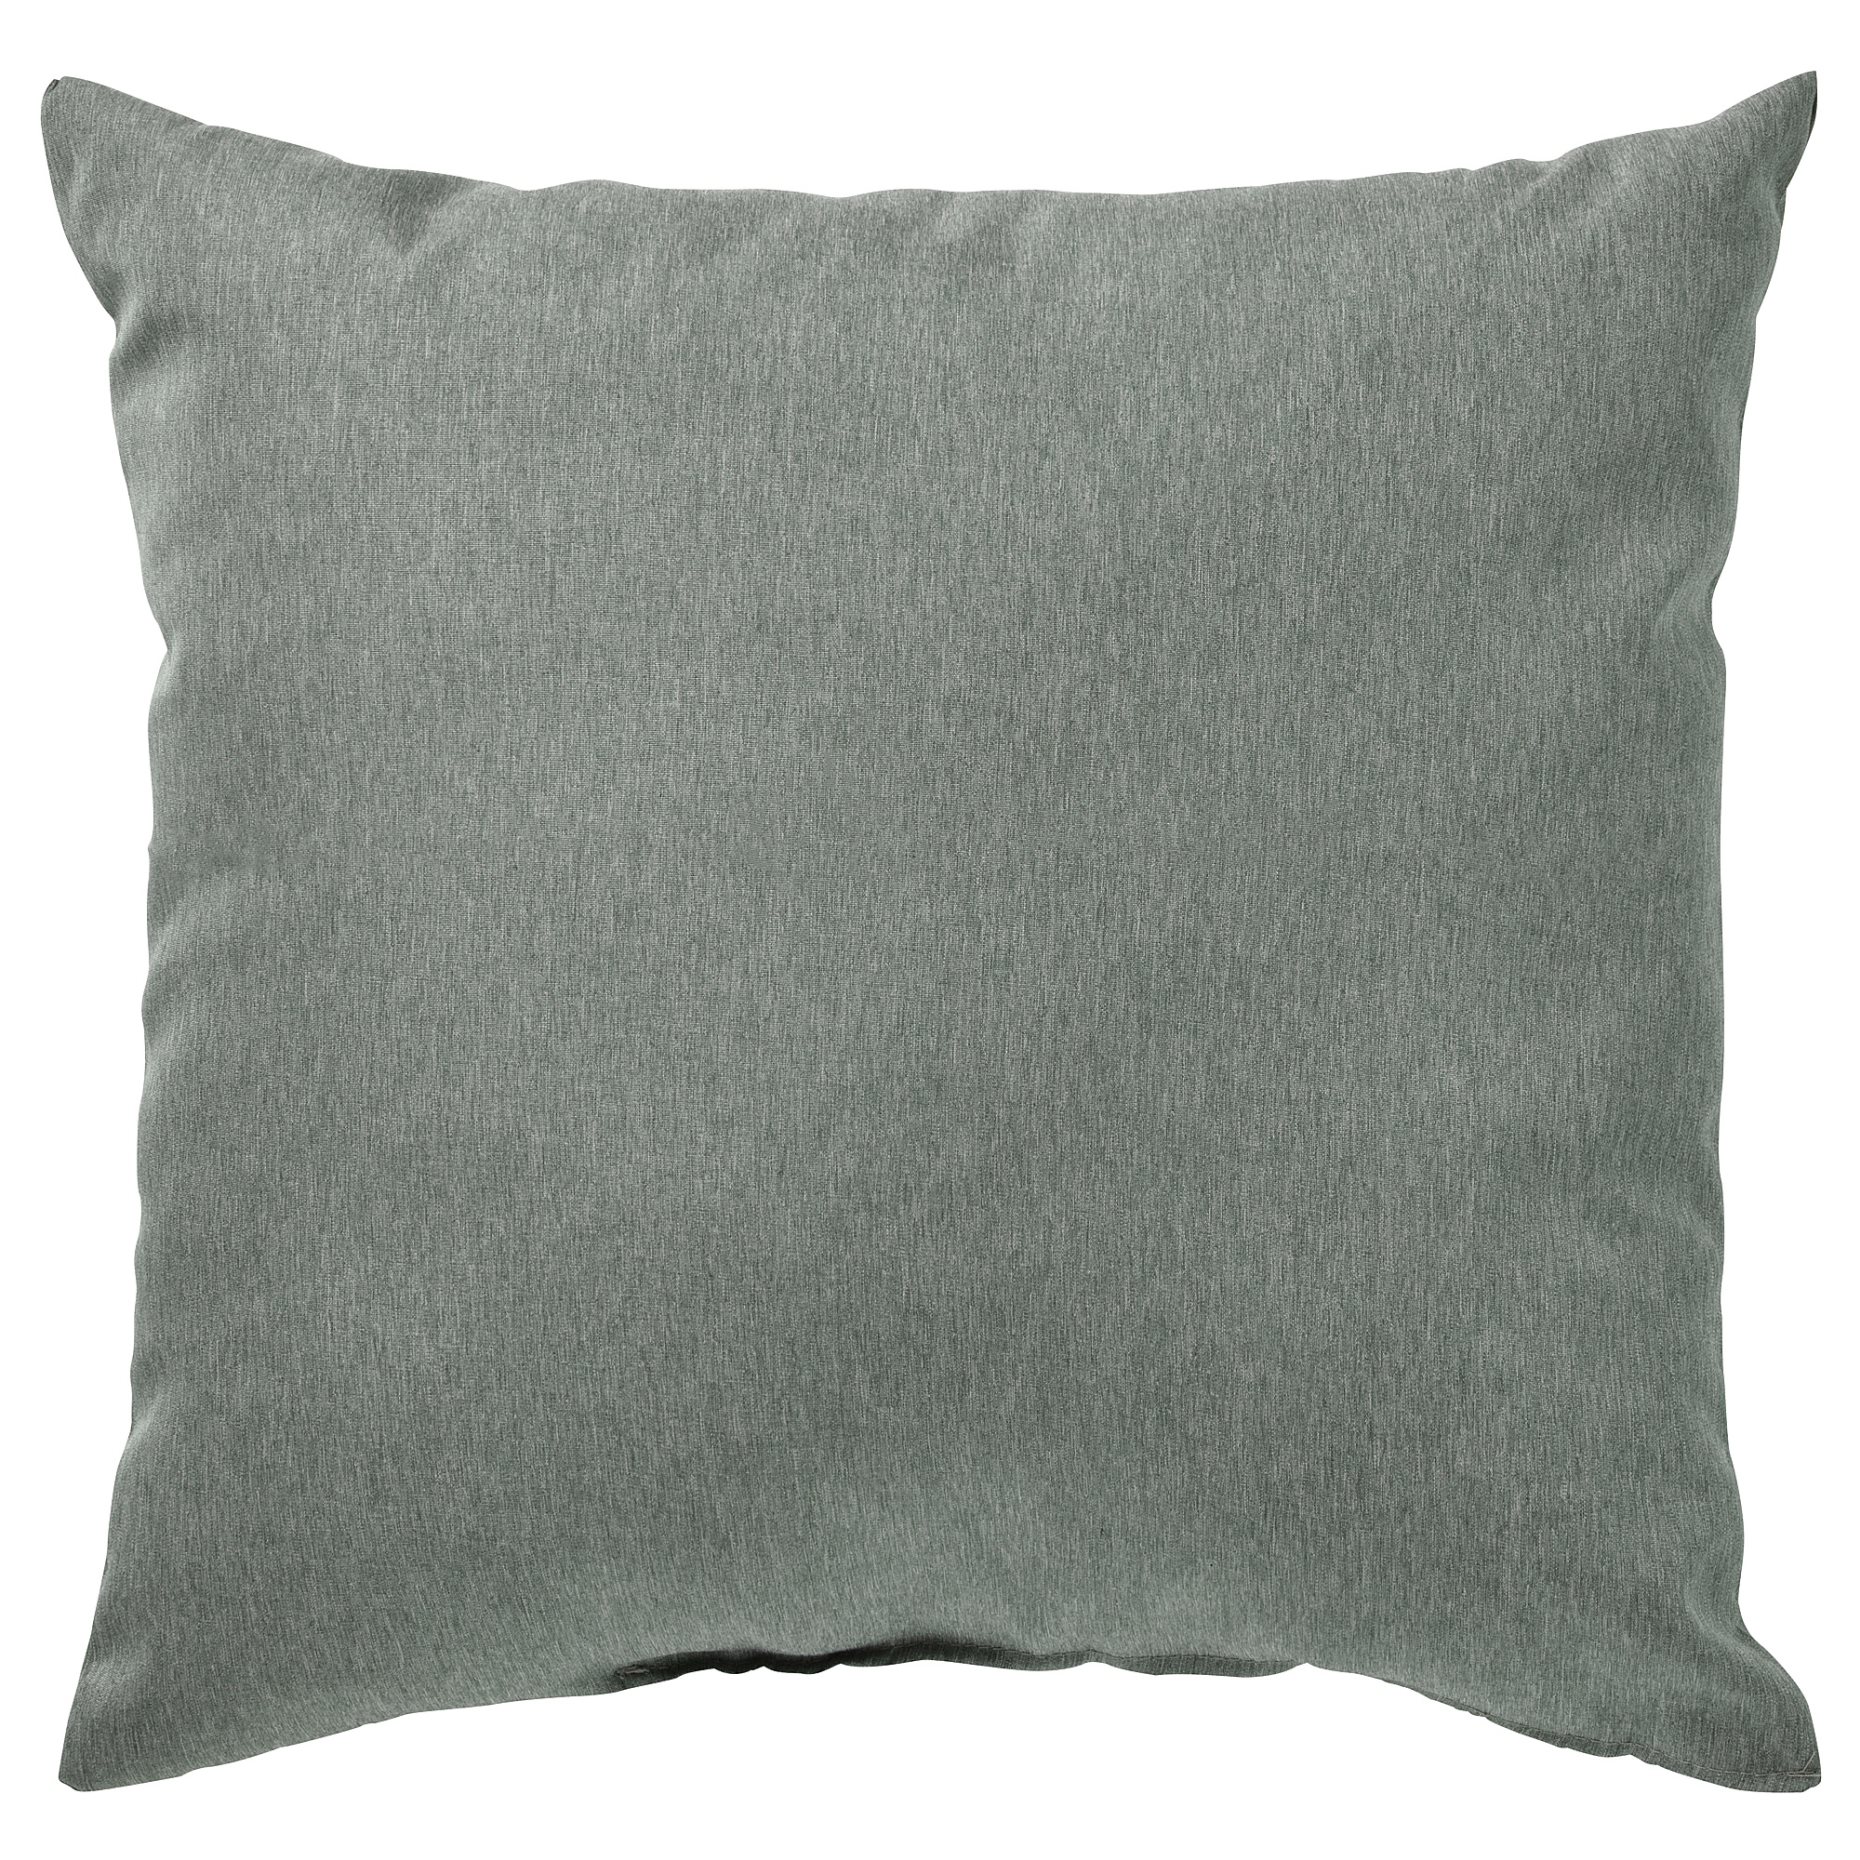 KÄRLEKSGRÄS, cushion, 40x40 cm, 004.954.21